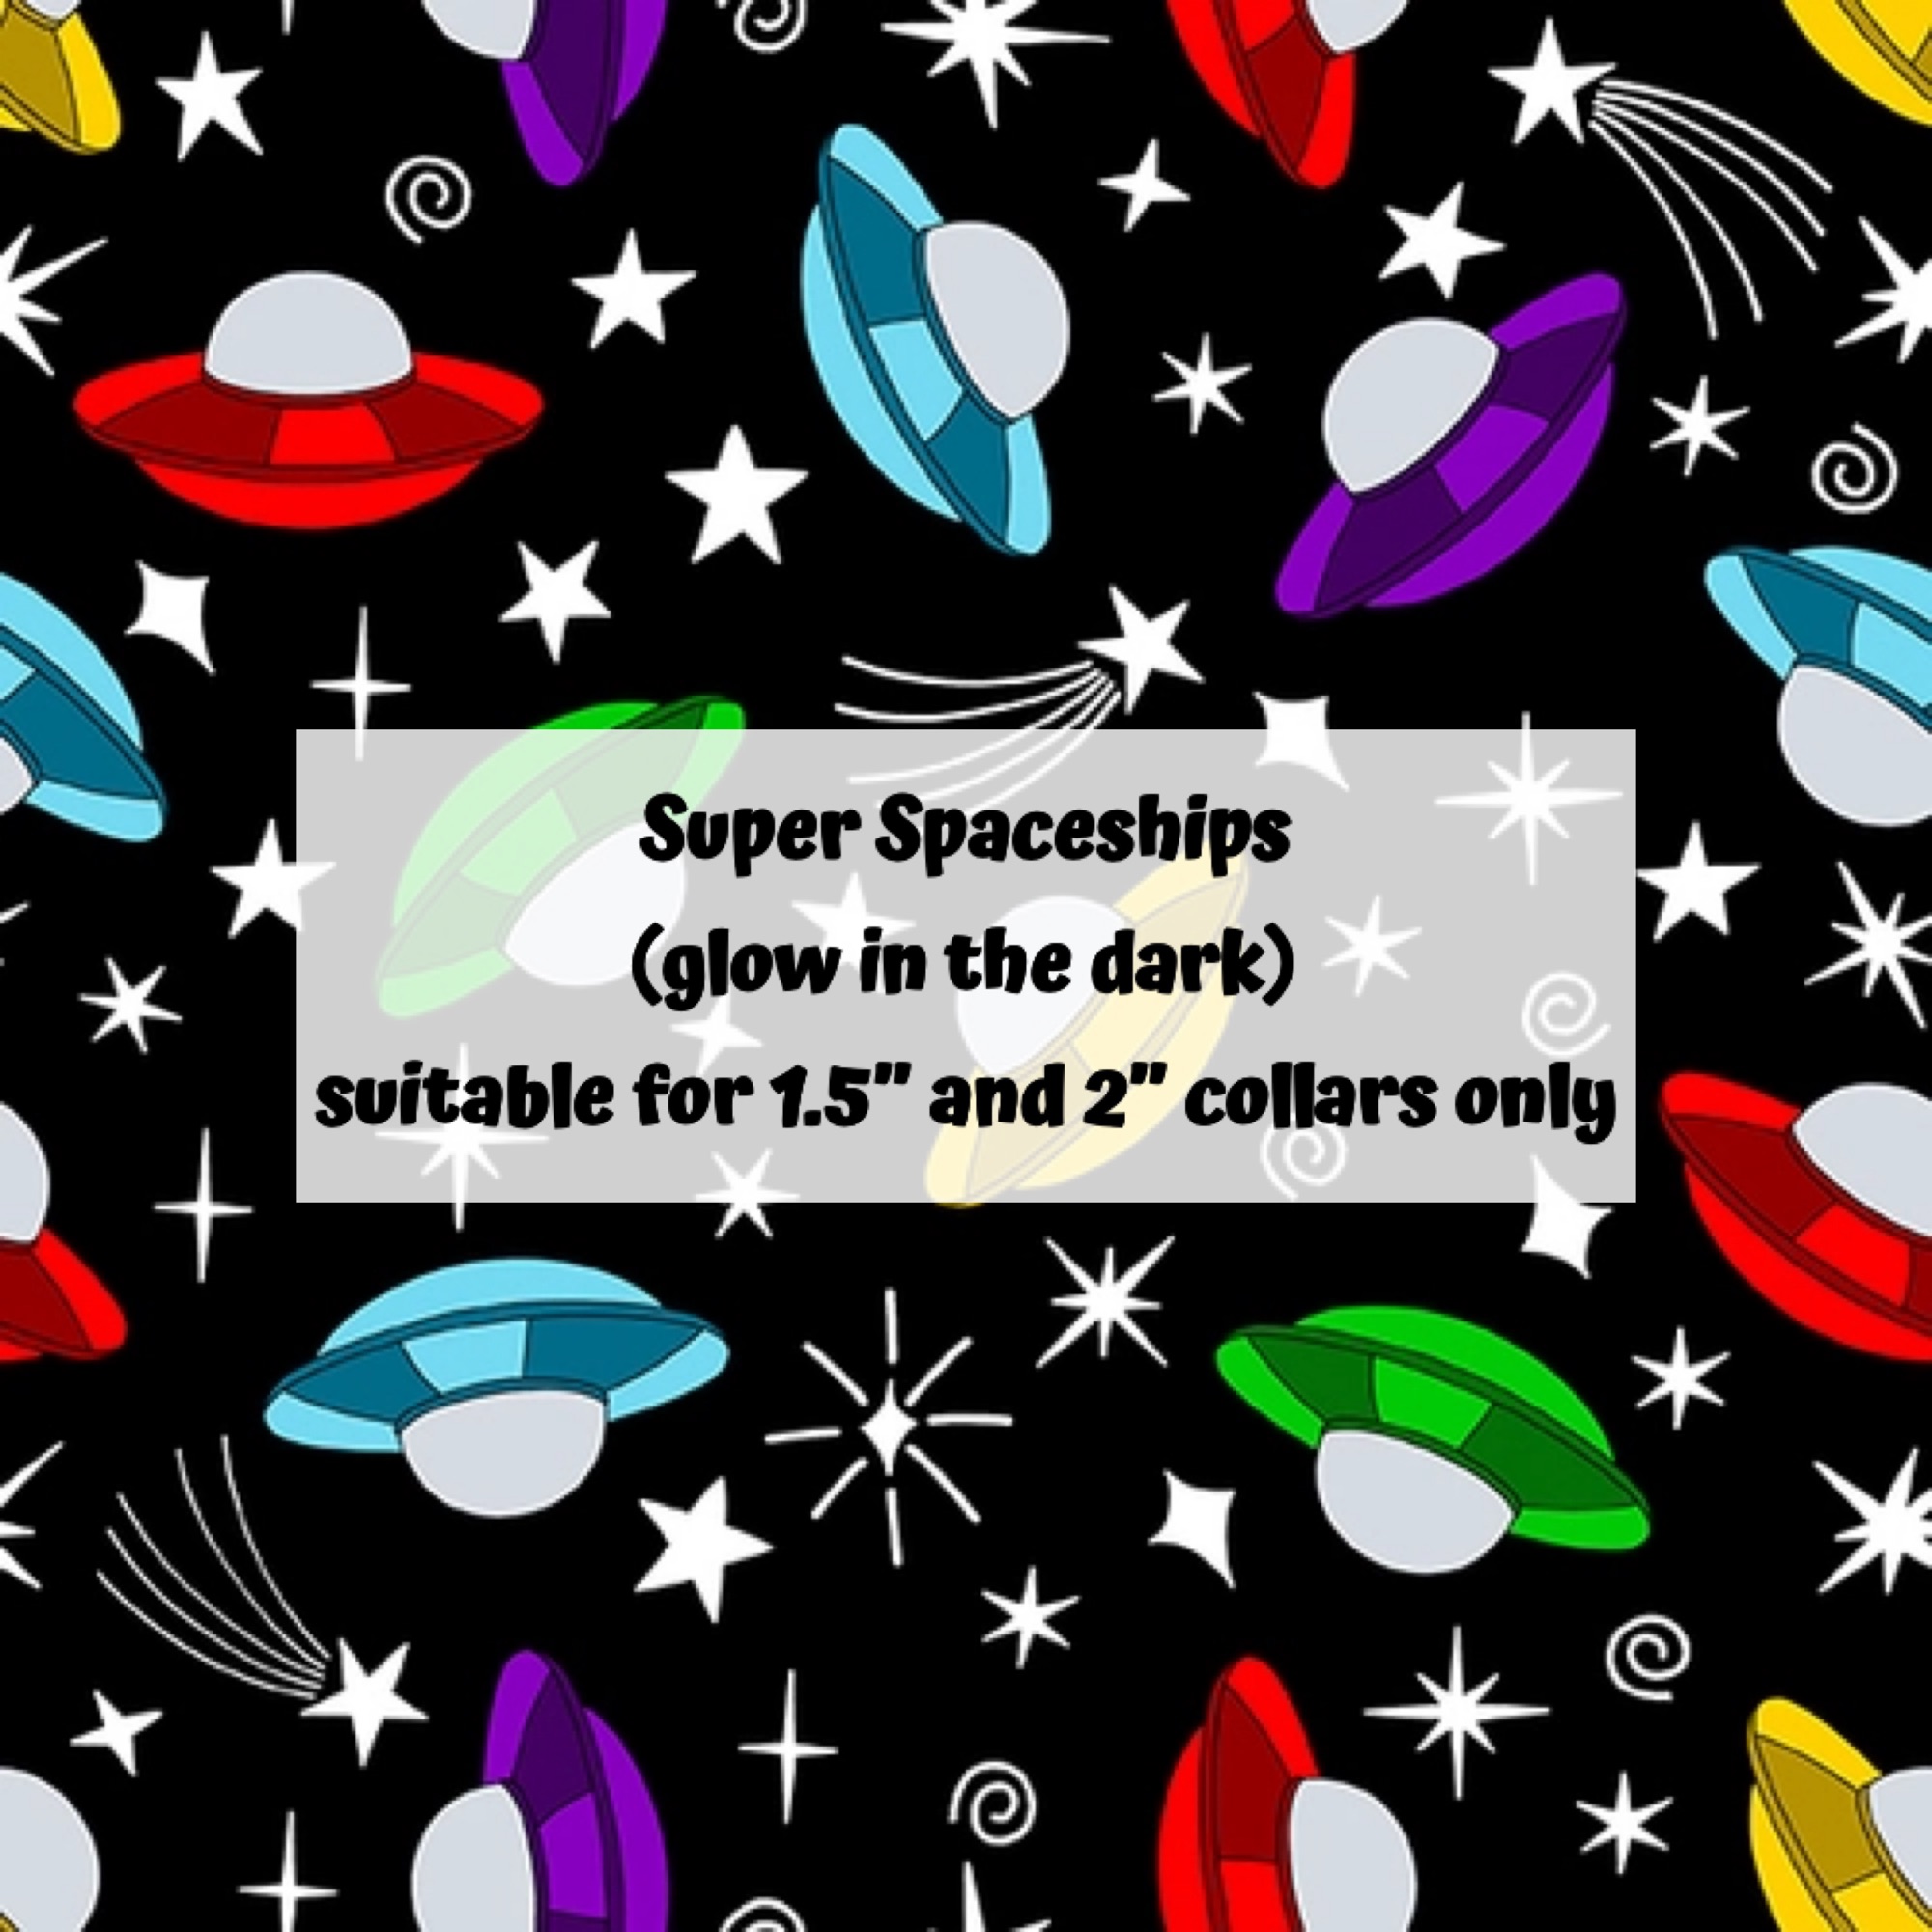 Super Spaceships (glow in the dark)